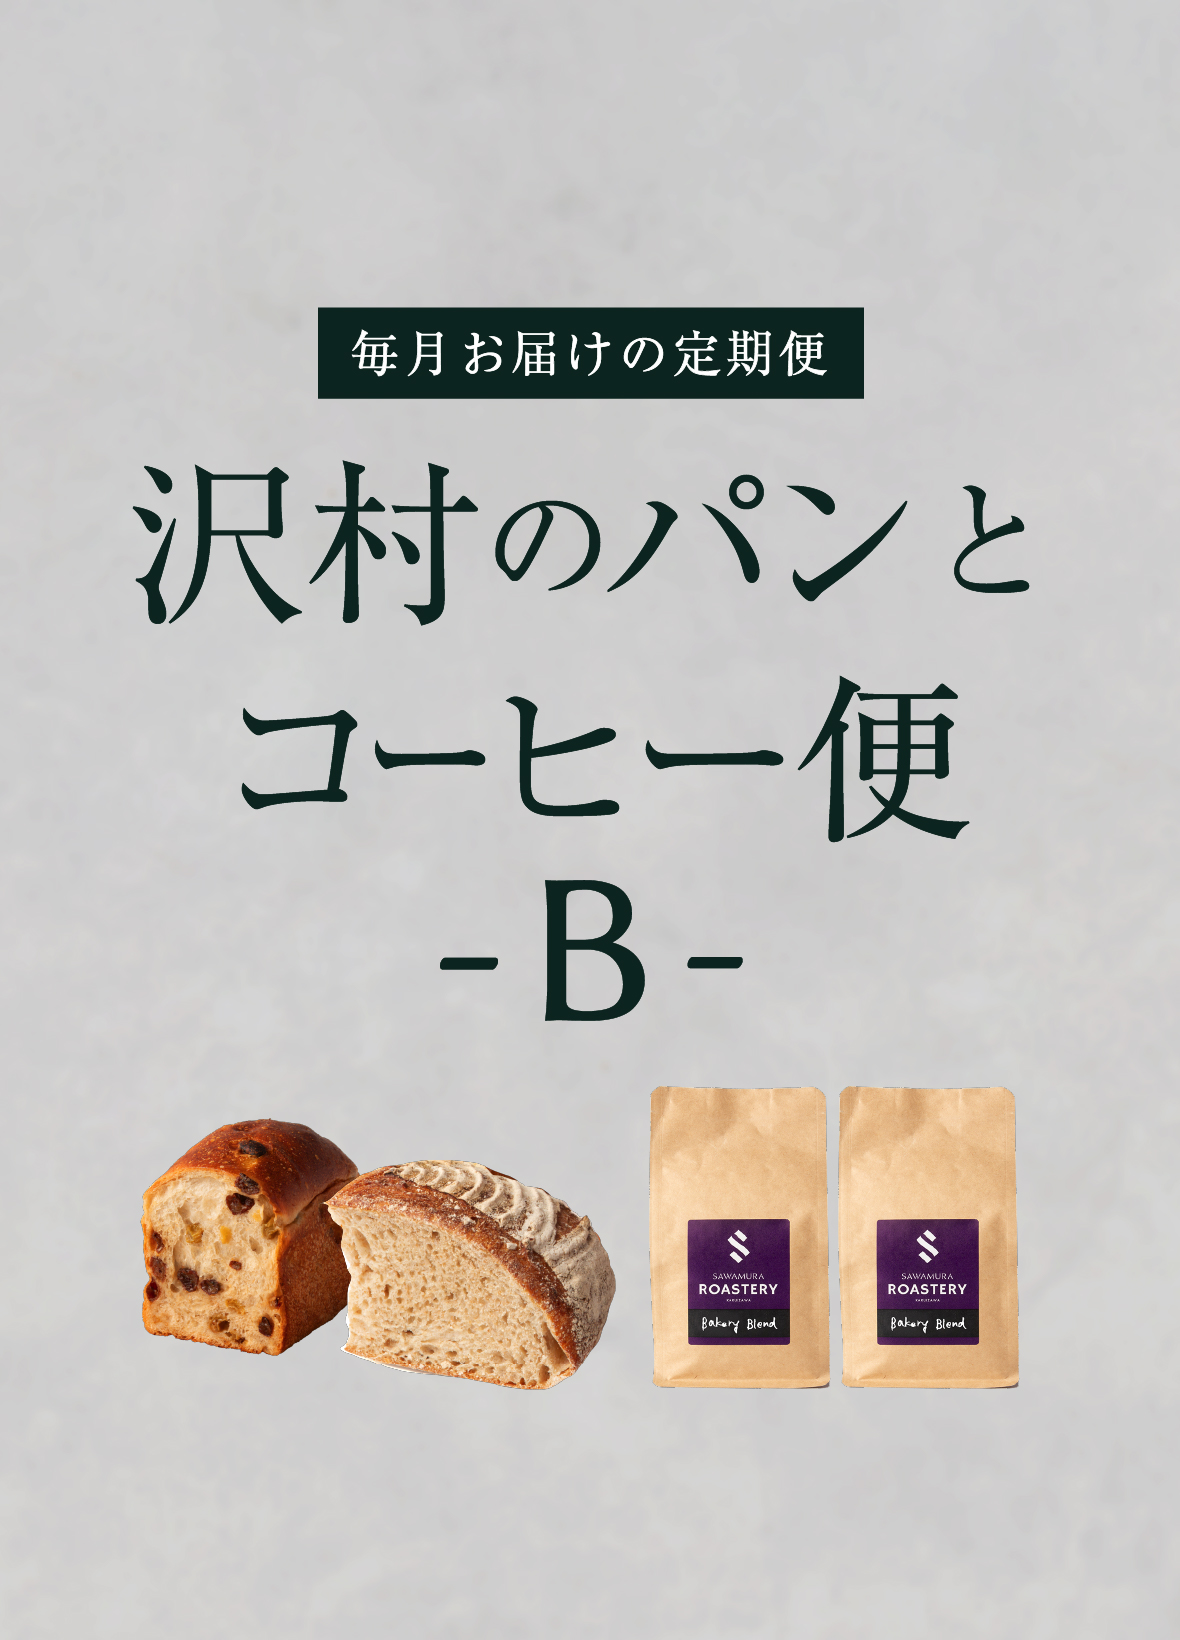 【沢村のパンとコーヒー便】B おすすめパンセット